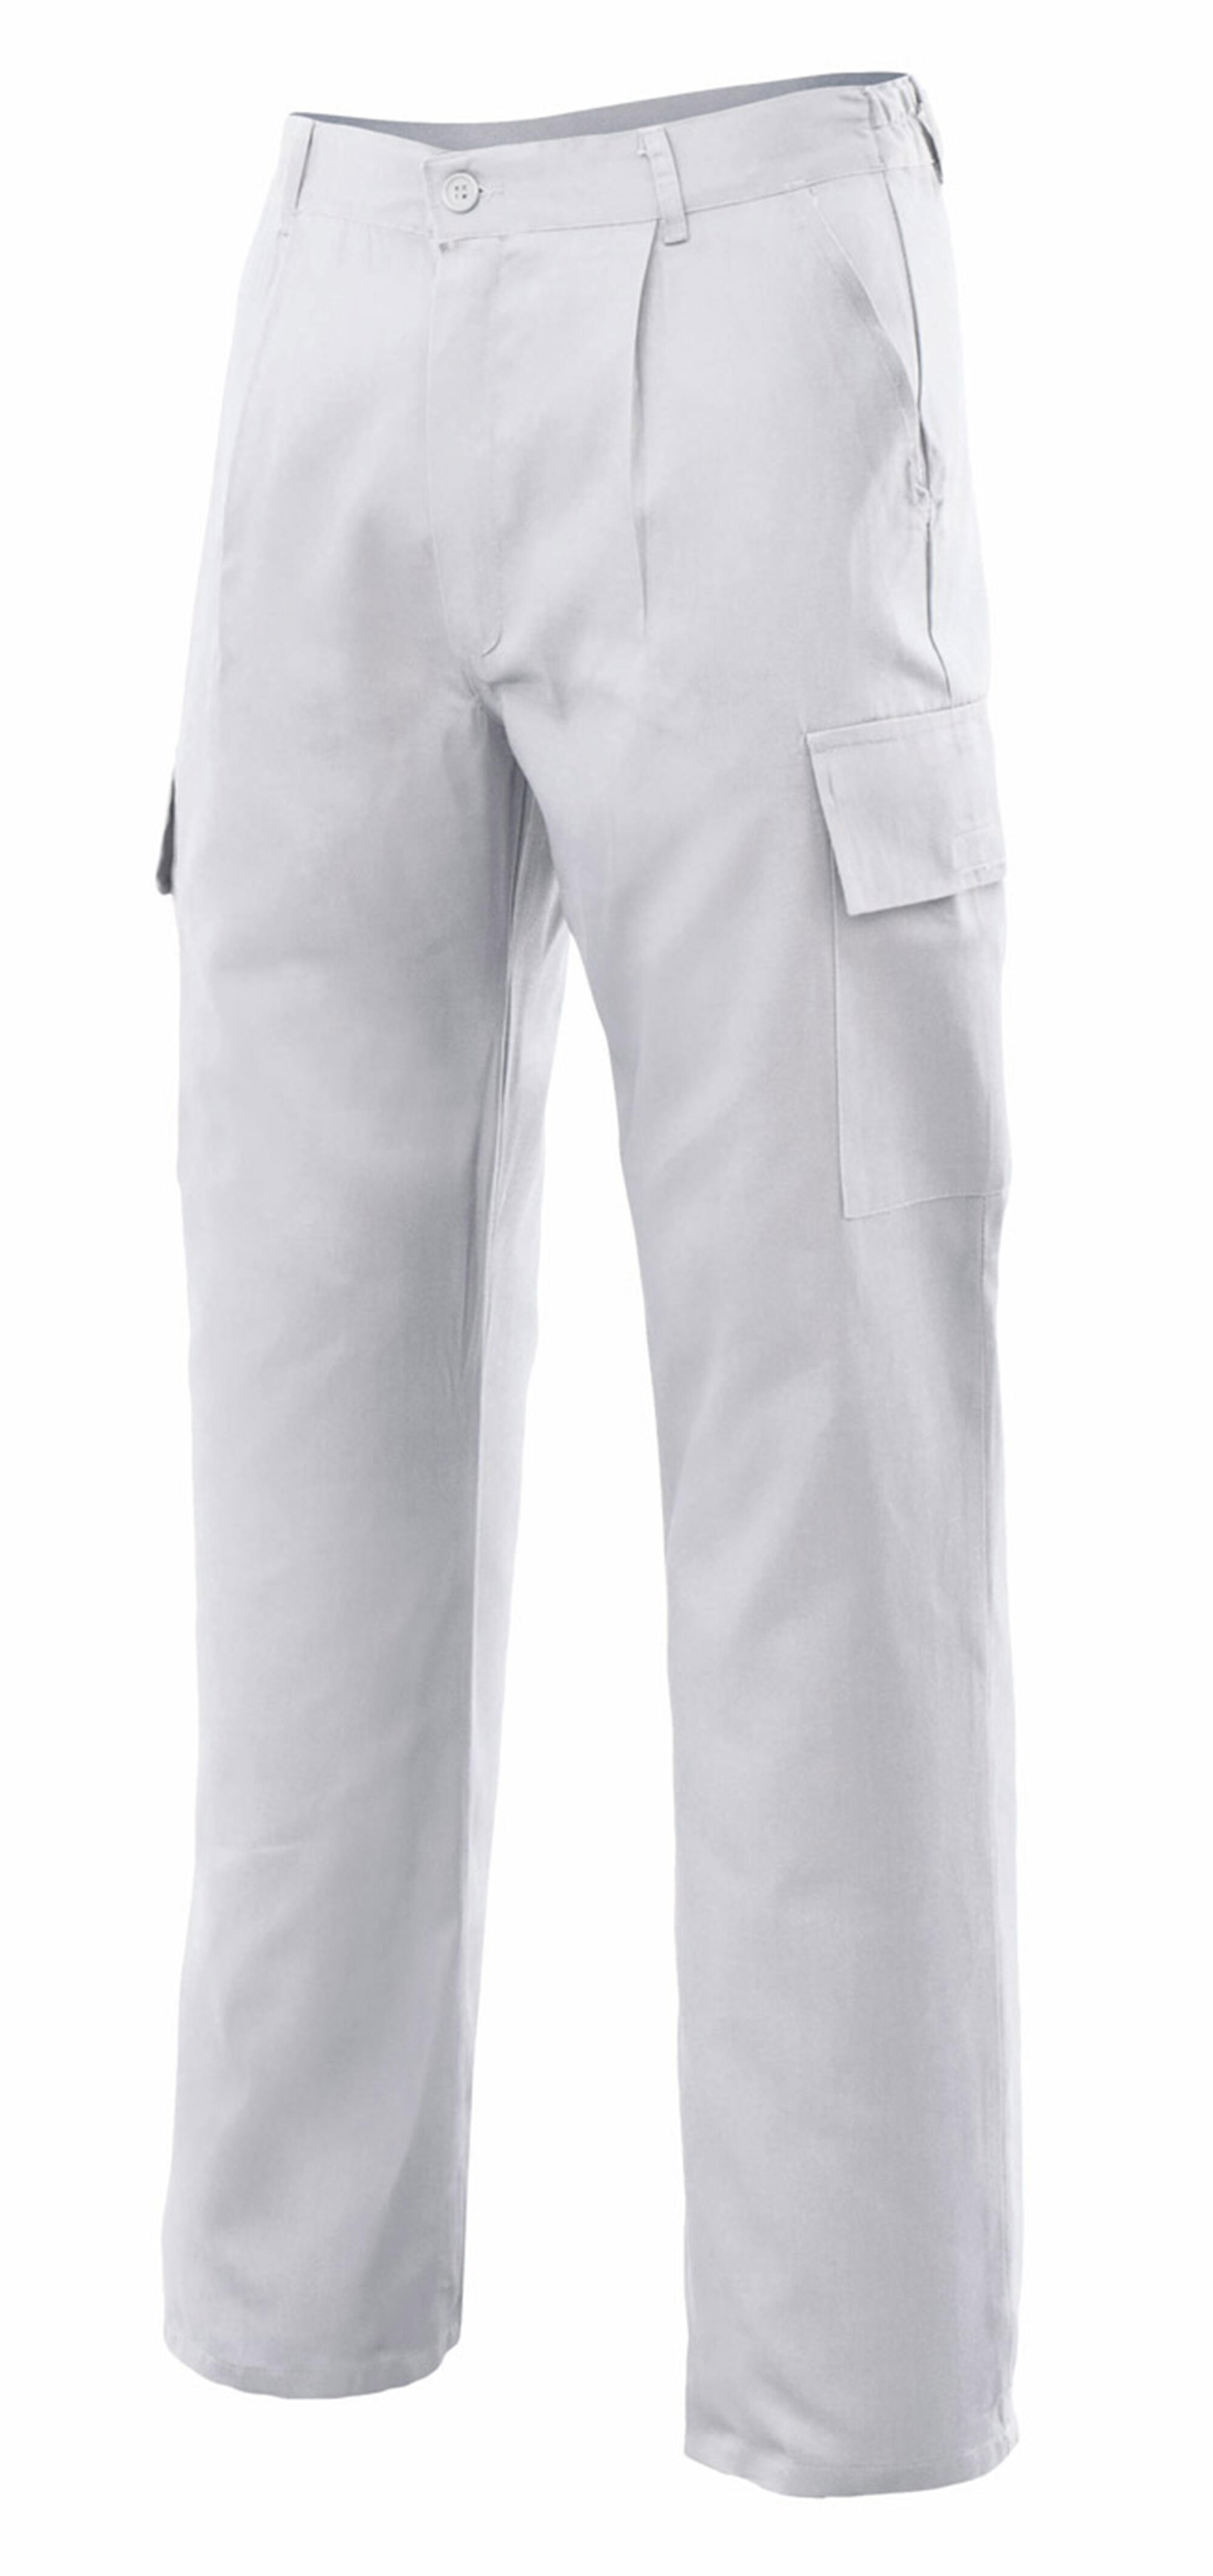 Pantalon de trabajo vertice multibolsillo blanco t50